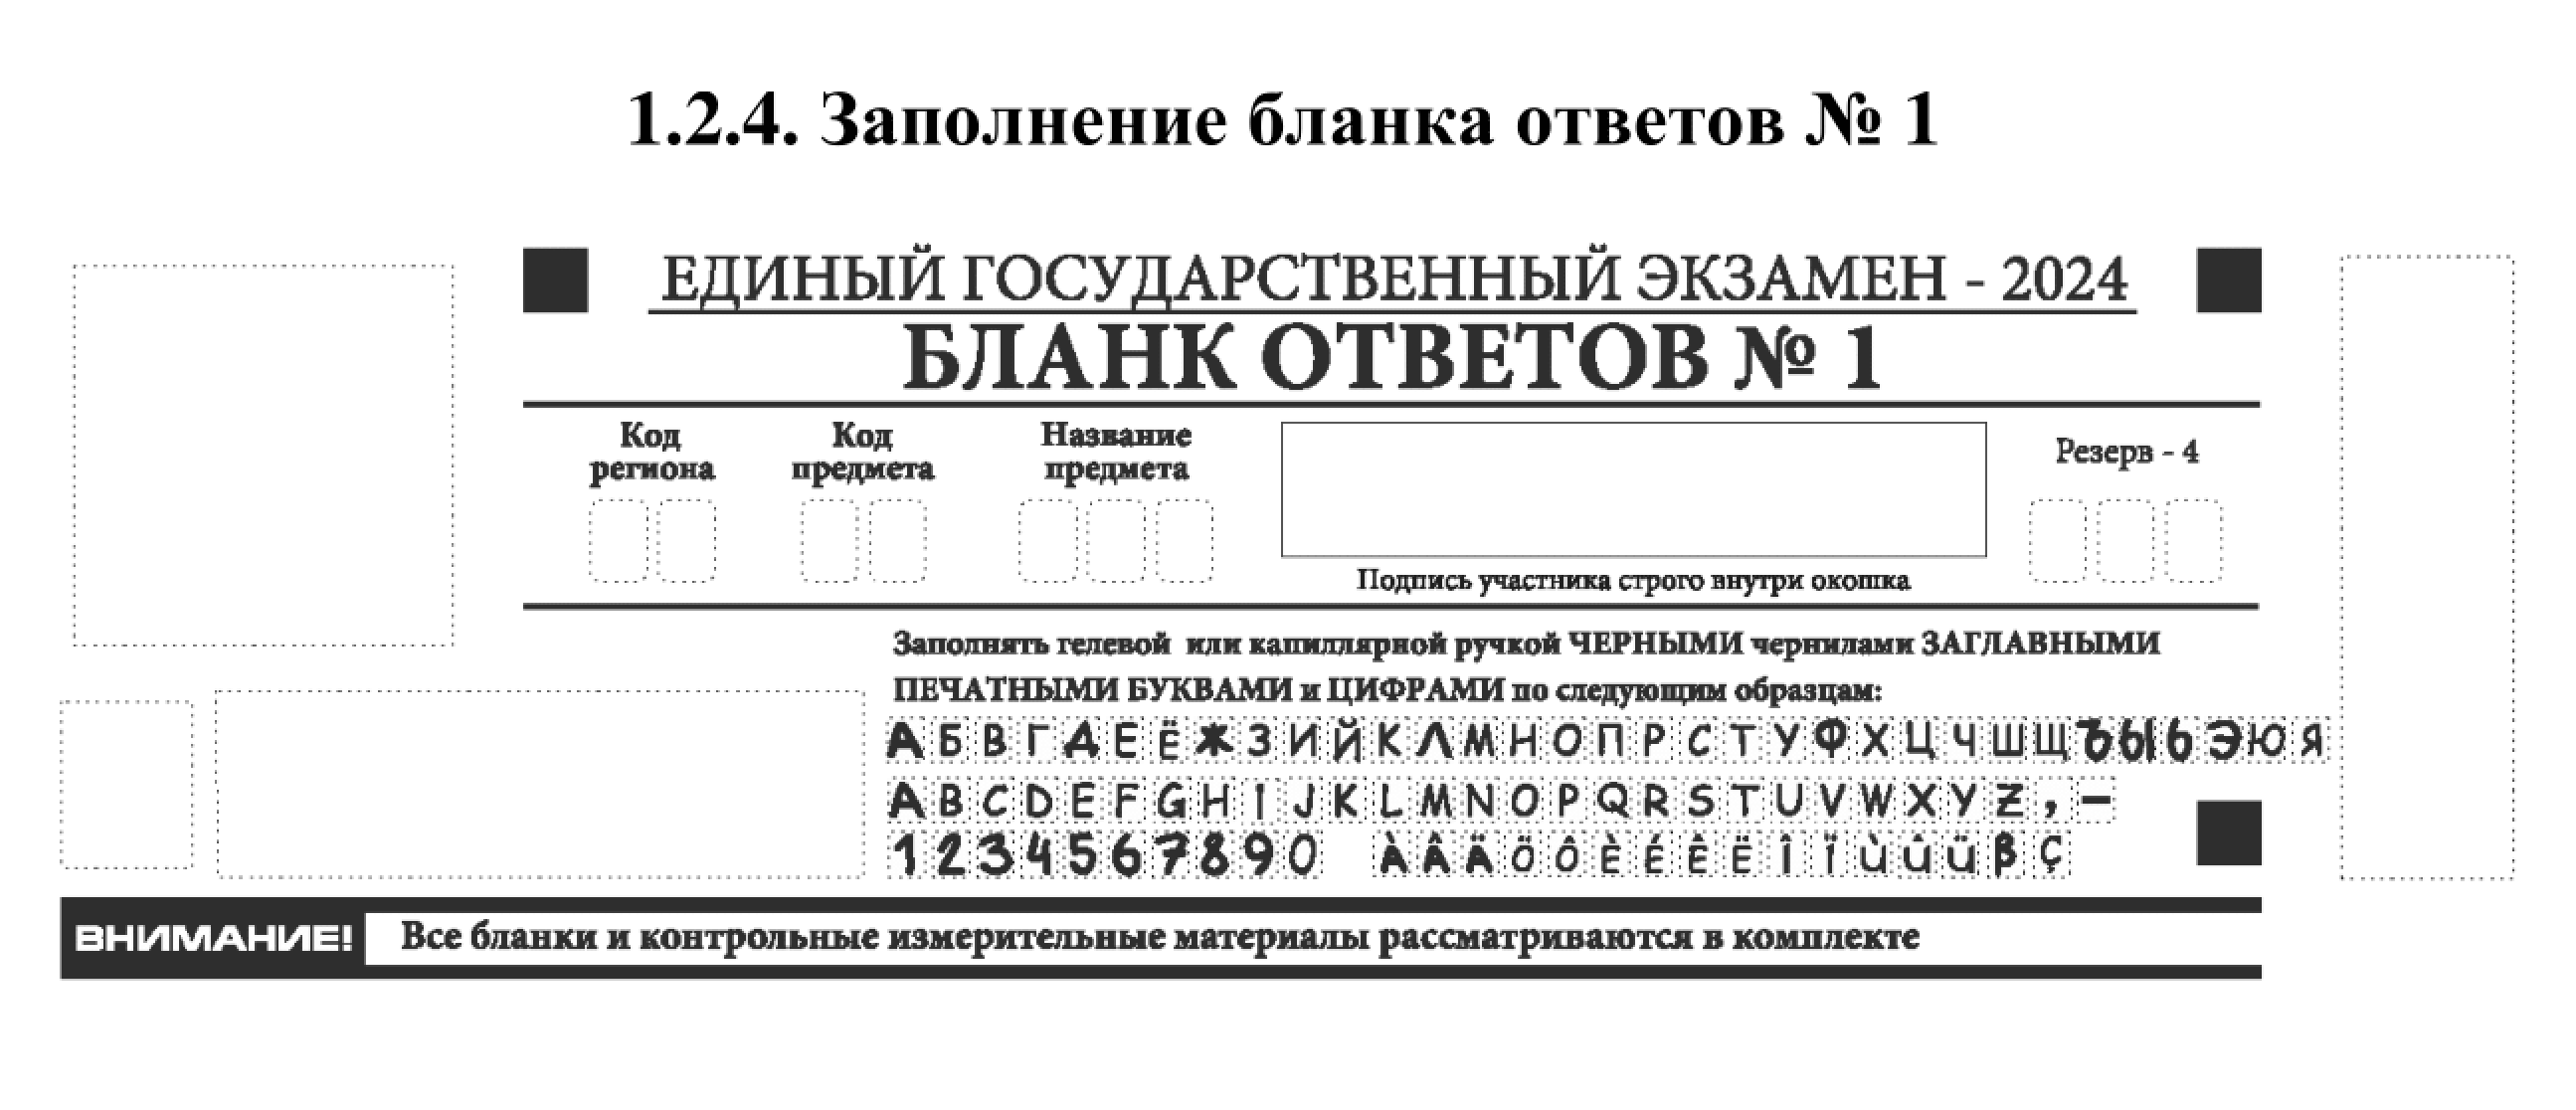 В верхней части бланка ответов № 1 участнику нужно заполнить только поле с подписью. Источник: obrnadzor.gov.ru